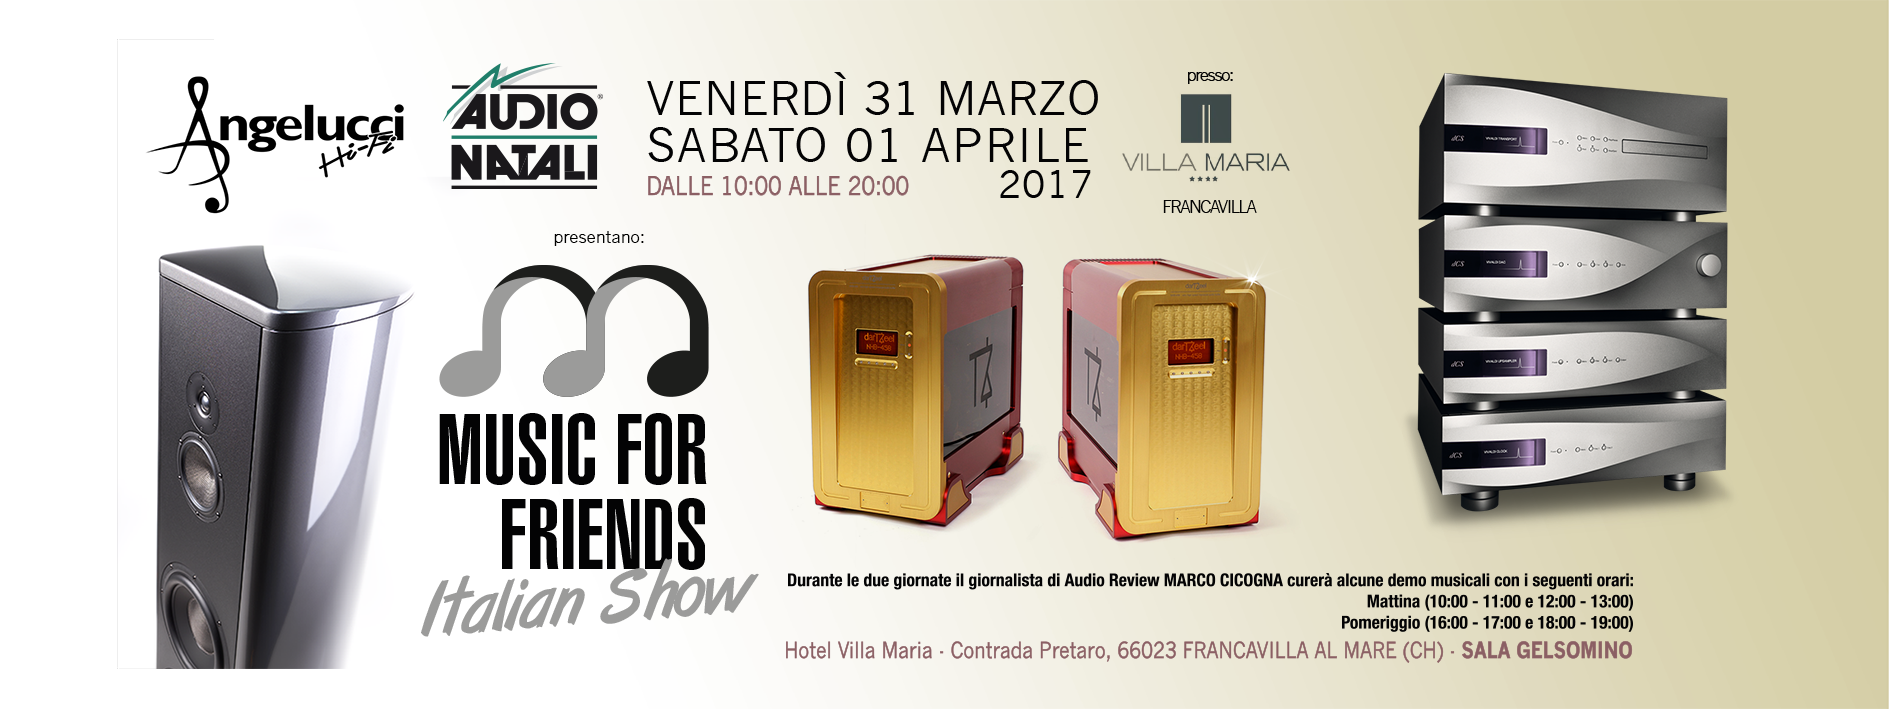 news AudioNatali - Music For Friends - Italian Show 31/03 e 01/04 Francavilla al Mare